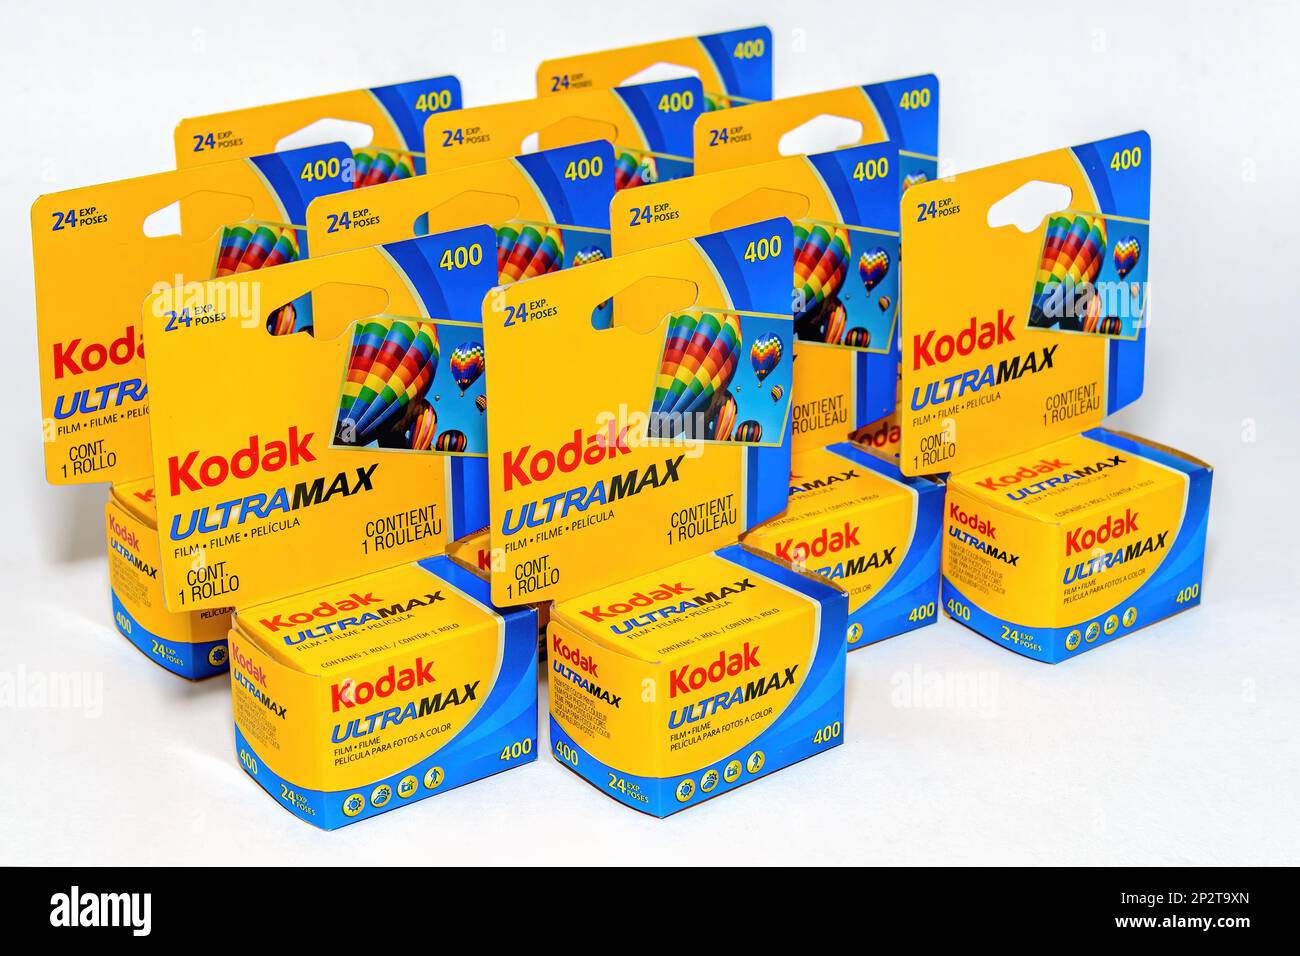 Eastman Kodak pan Film Canisters Goldberg Bros GB reel canister vintage lot